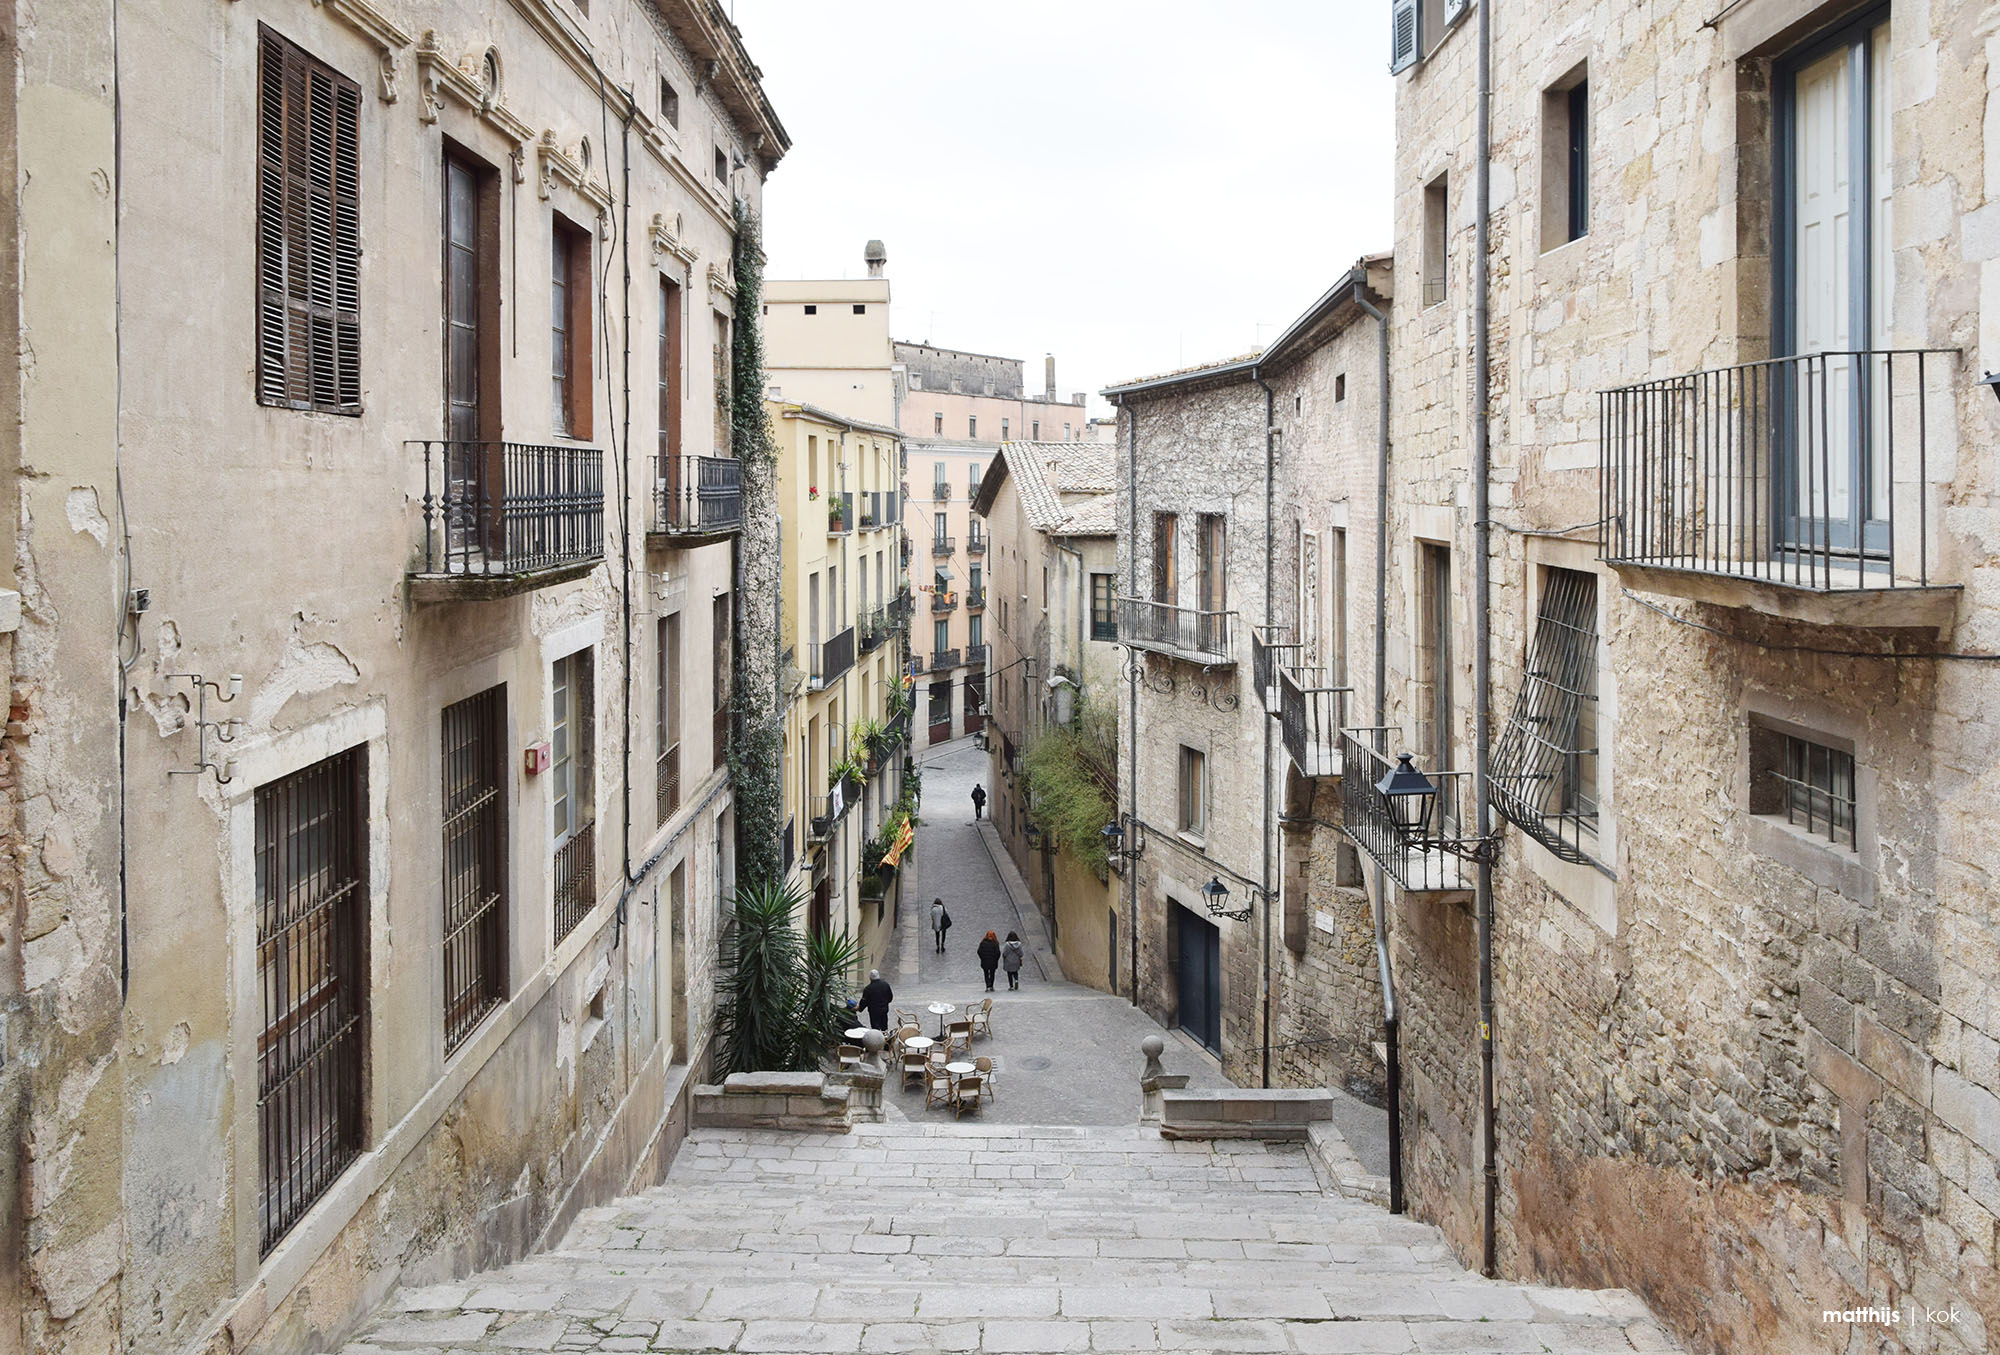 Girona Photo Essay | Photography by Matthijs Kok